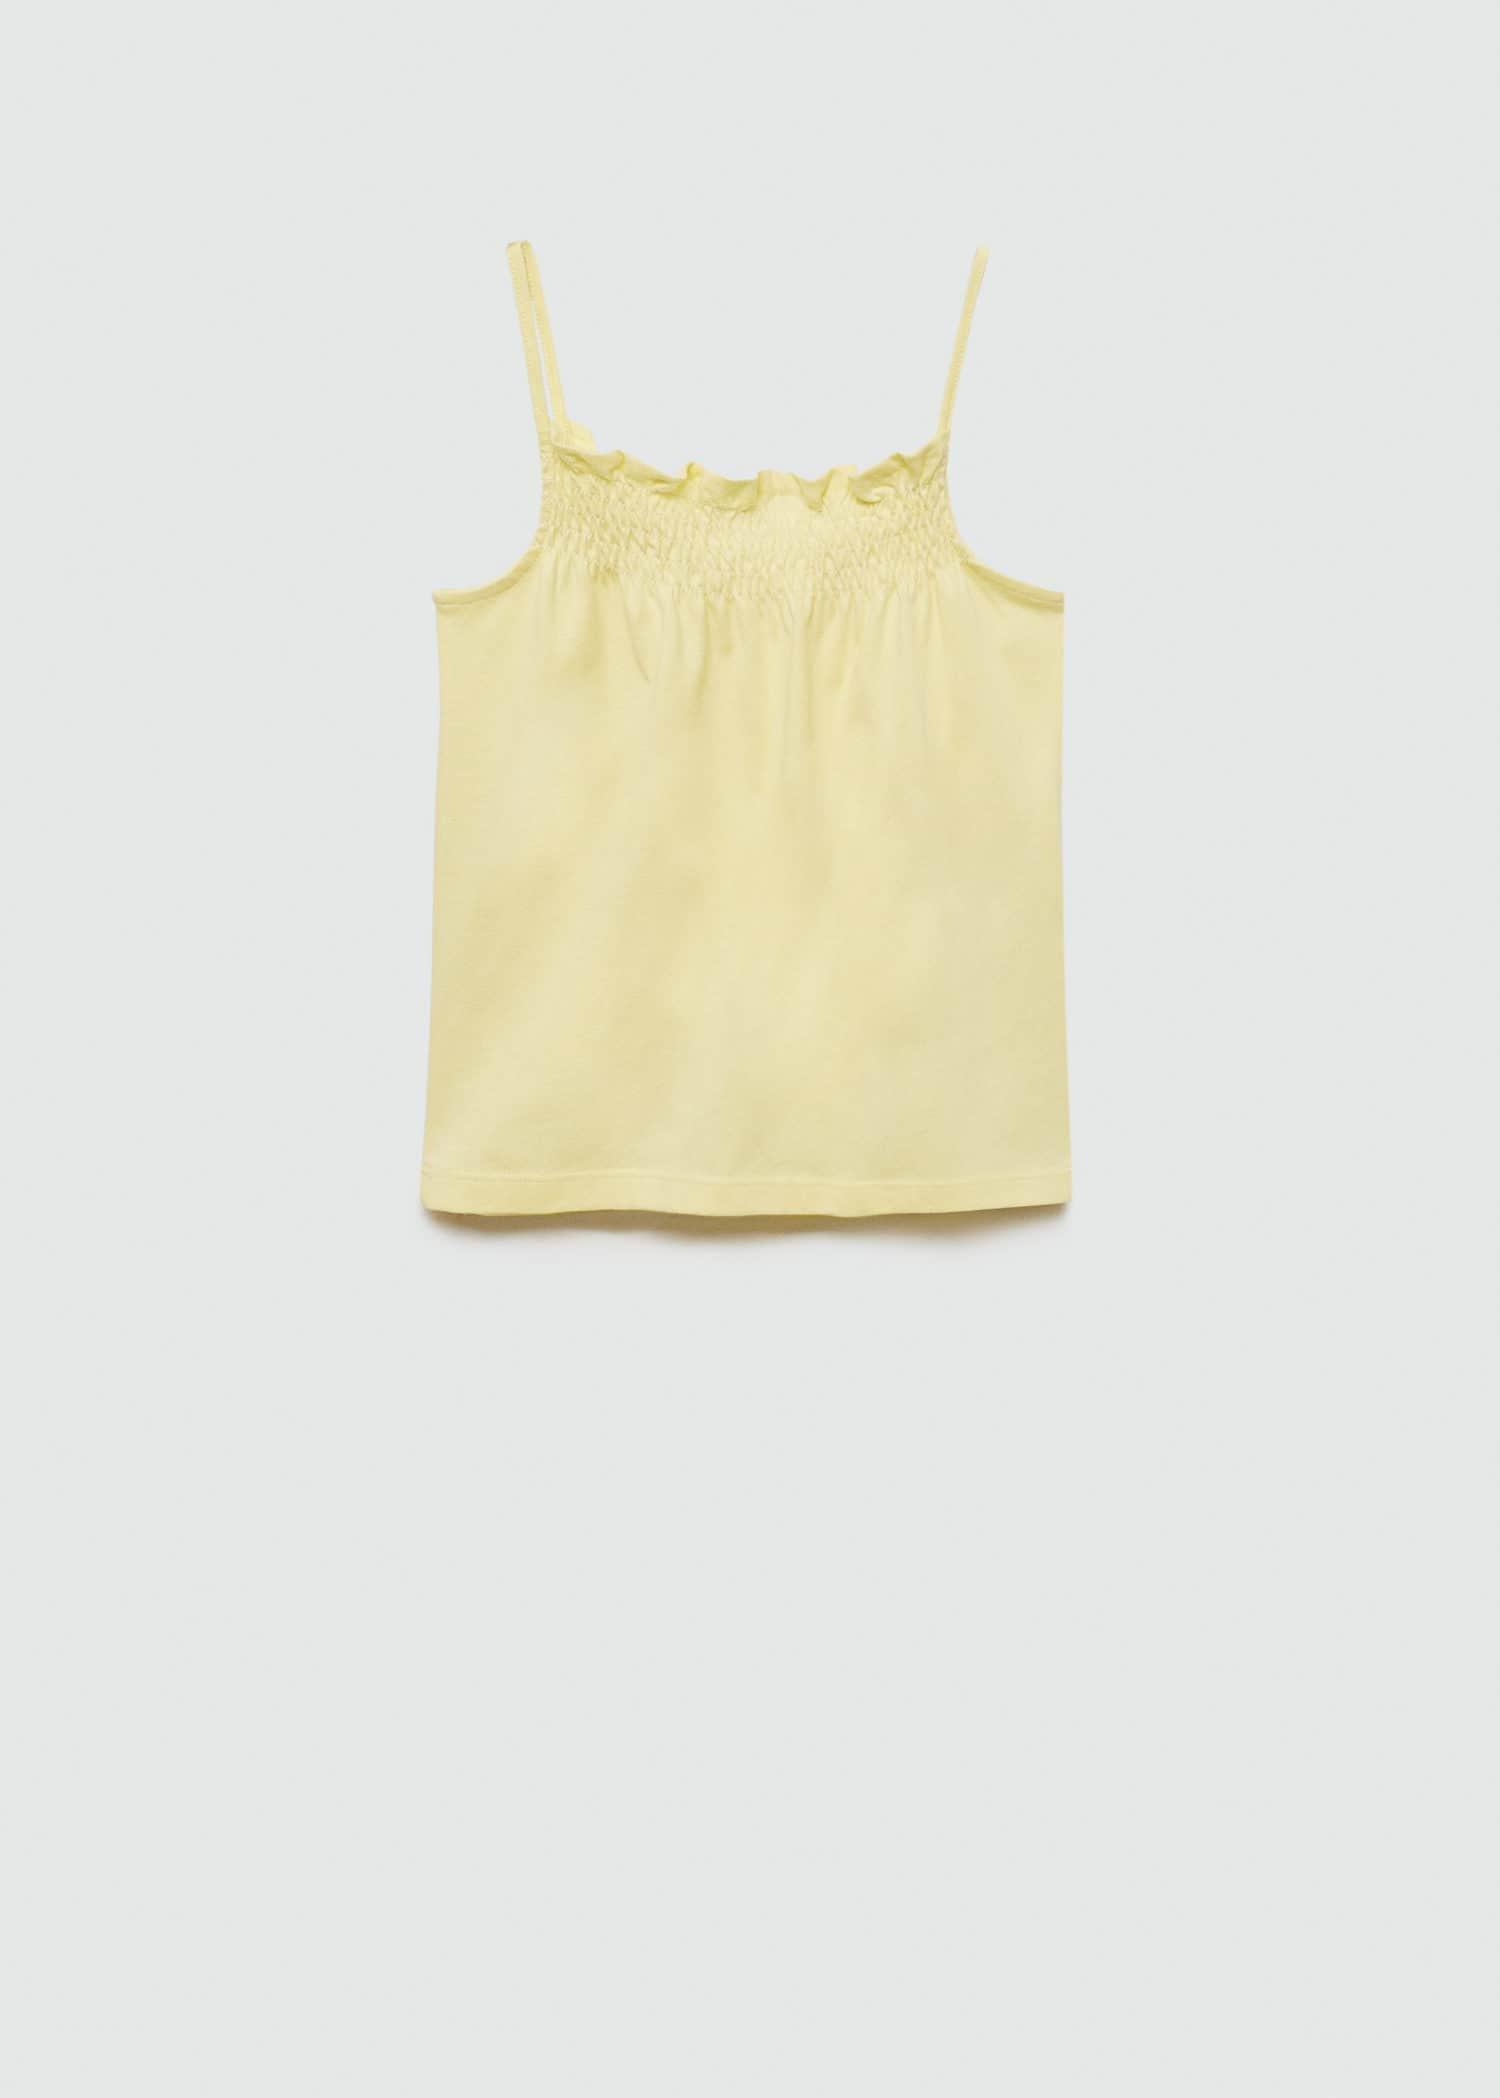 Mango - Yellow Gathered Neck T-Shirt, Kids Girls